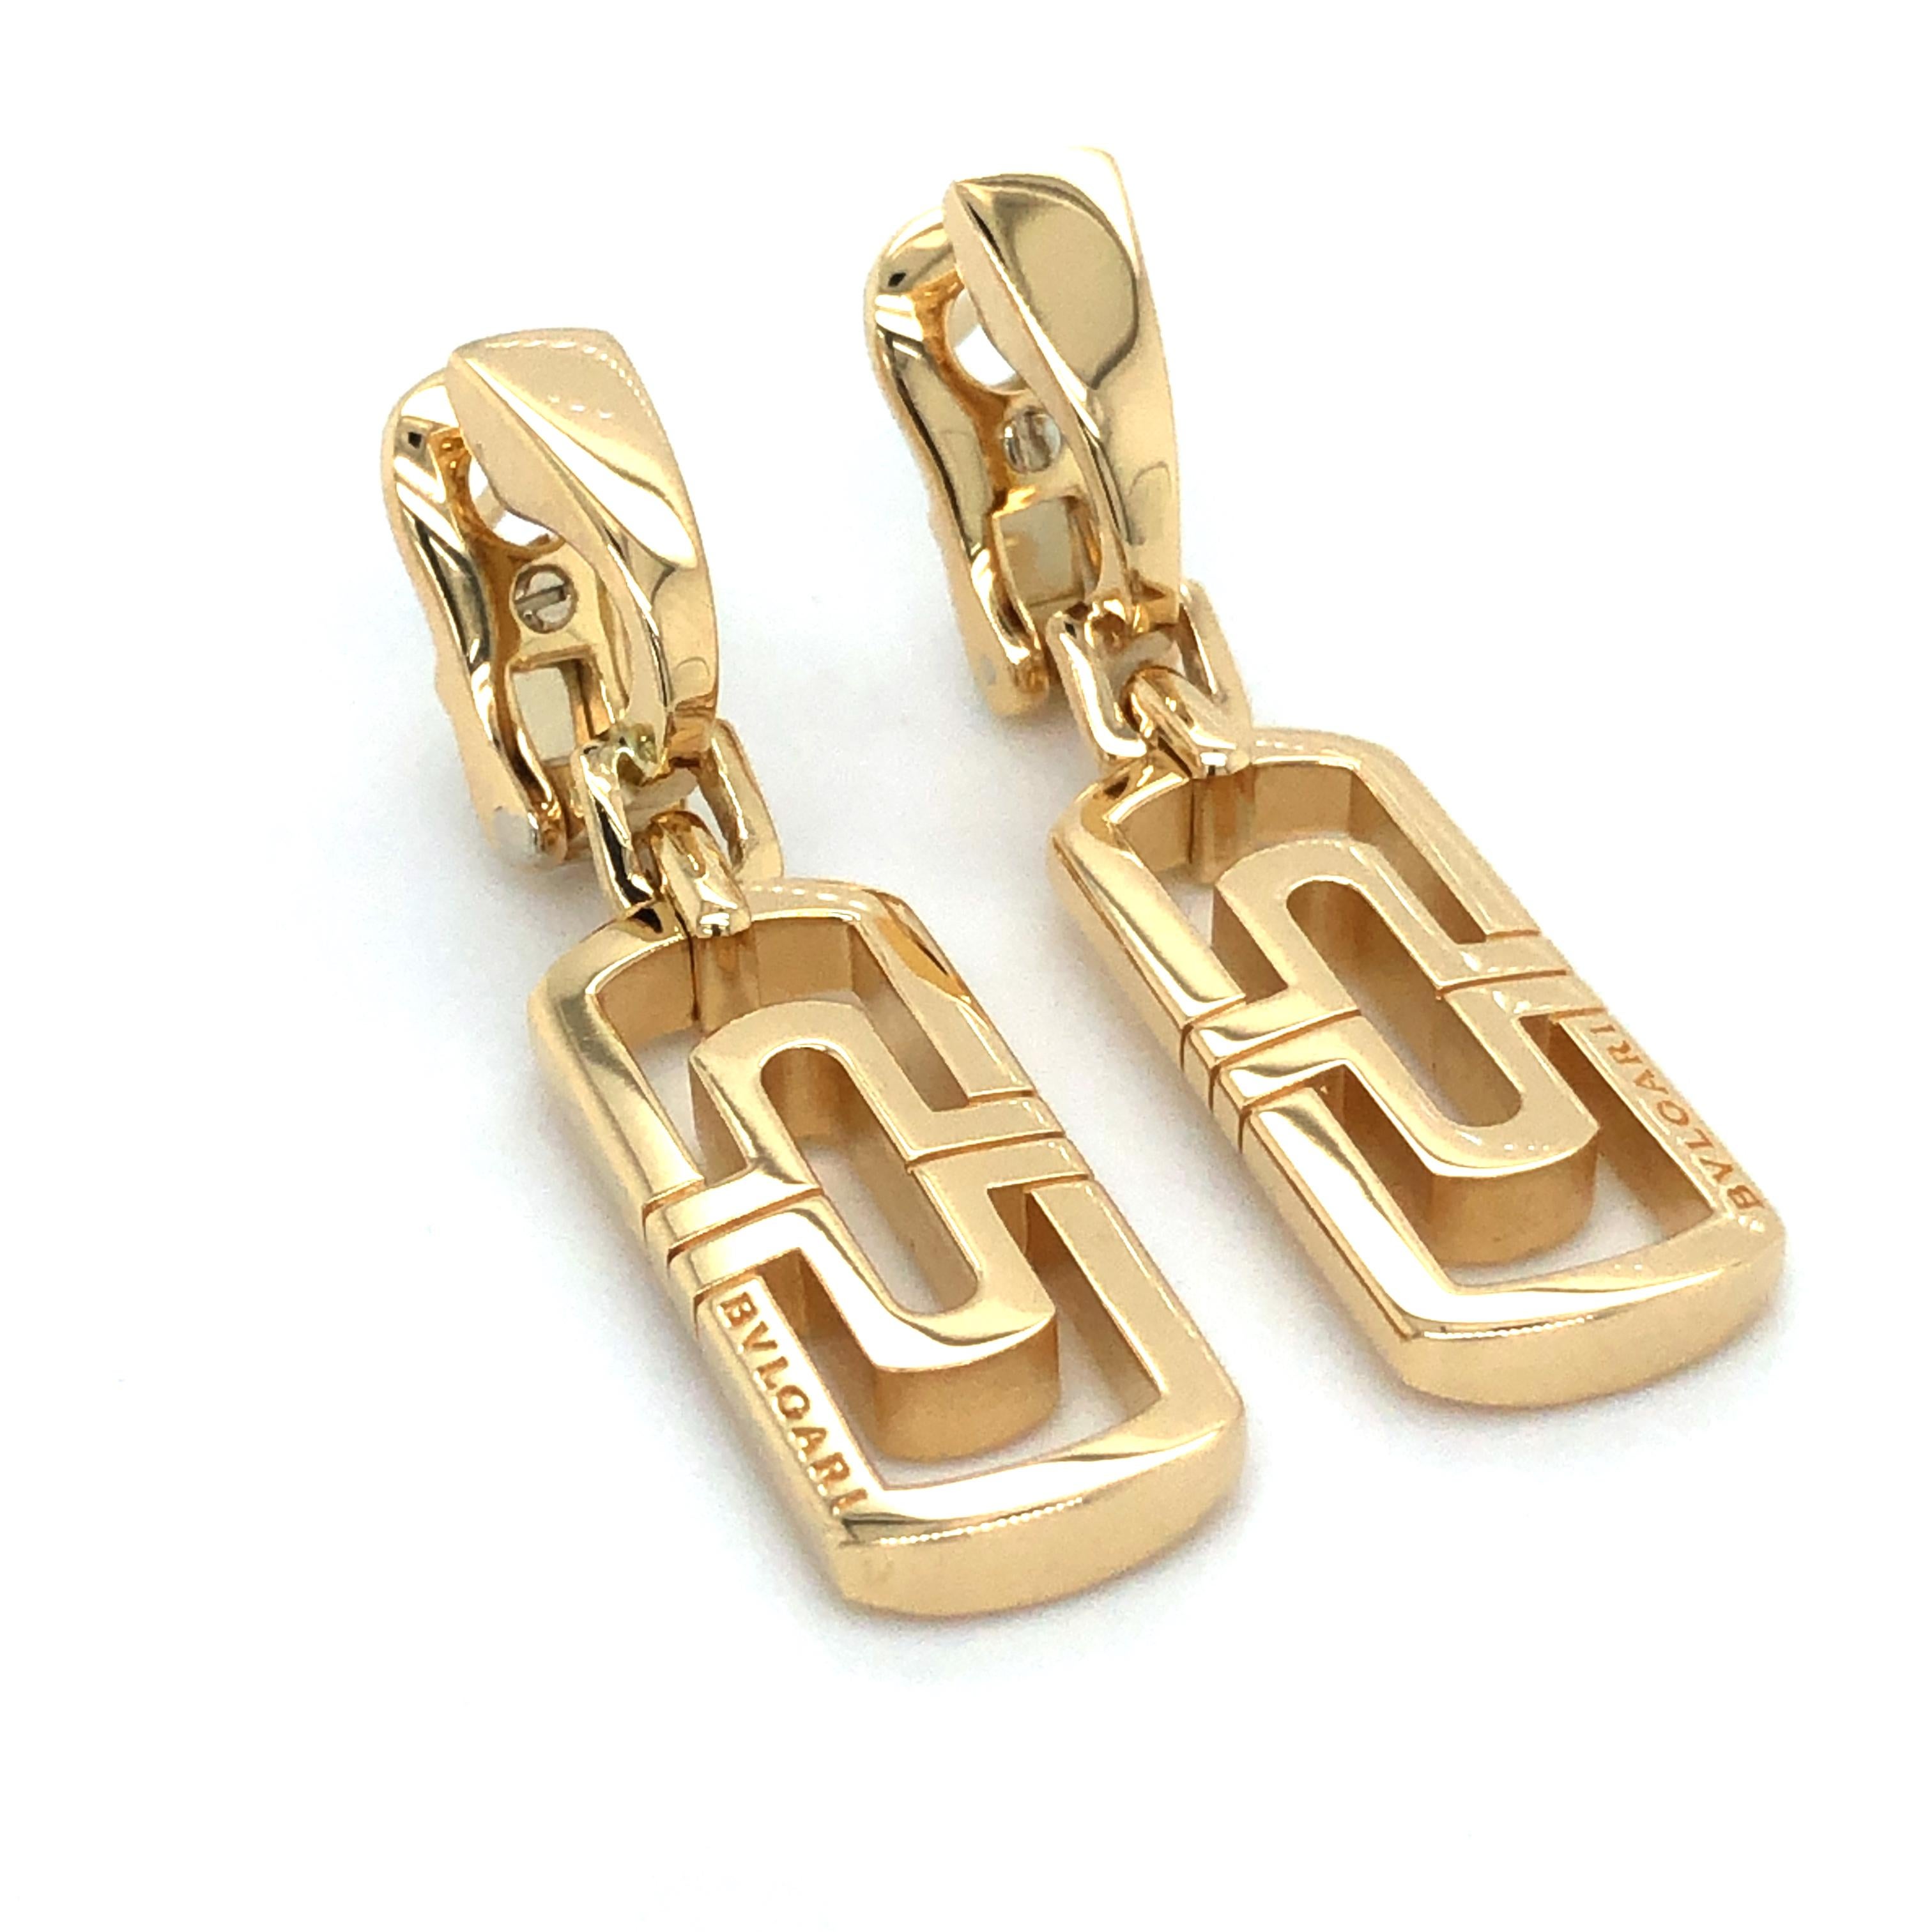  Ikonische und seltene Vintage-Ohrringe von Bvlgari Panentesi aus Gelbgold, die baumeln. Die Ohrringe zeigen einzigartige geometrische Muster, die in massivem 18-karätigem Gold gefertigt sind. Die Ohrringe haben eine quadratische Form und zeigen